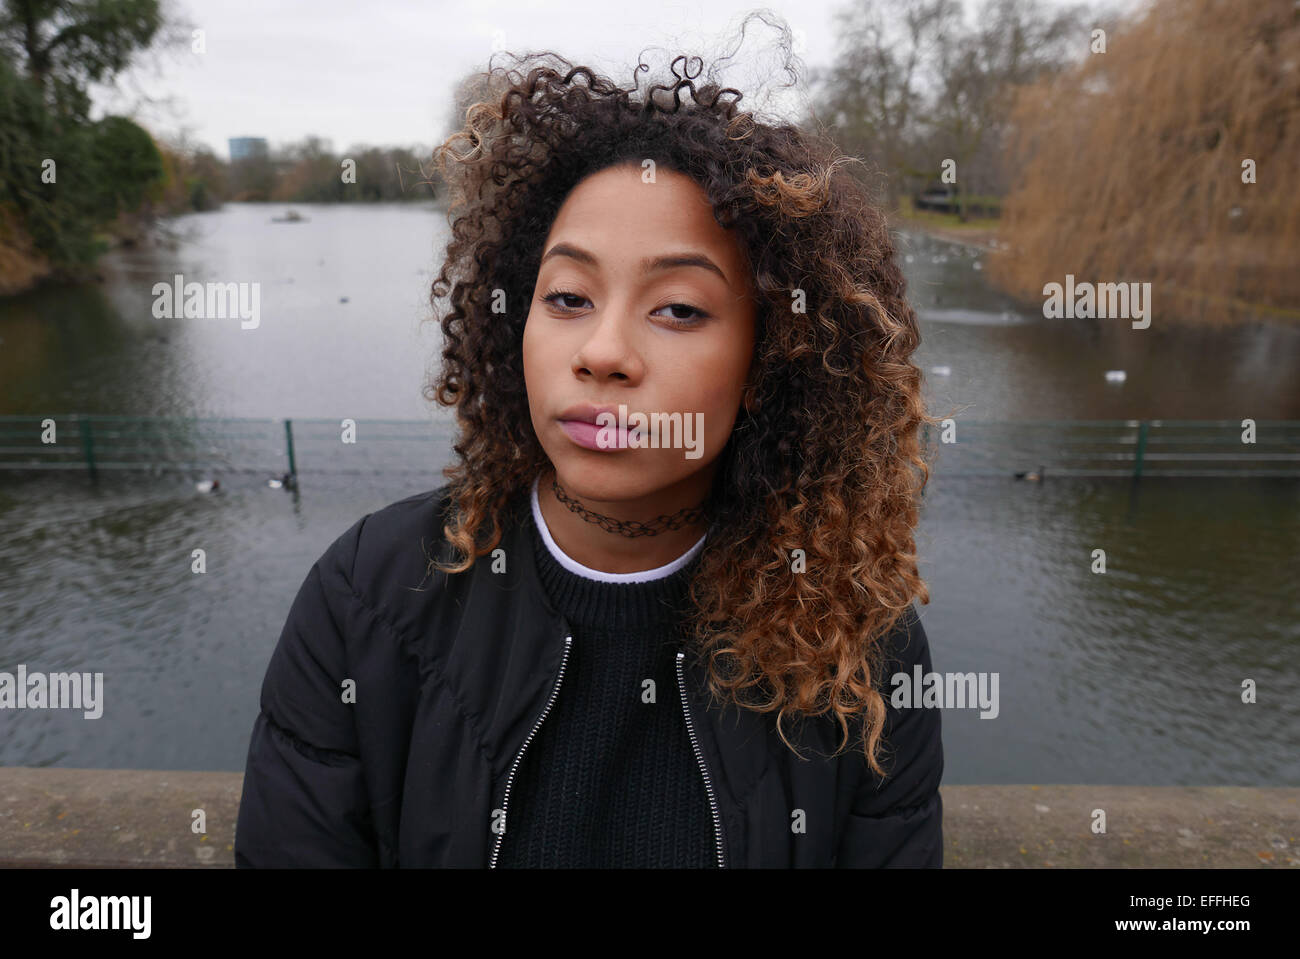 Regno Unito London Regents Park ritratto di una giovane e alla moda di razza mista ragazza Foto Stock